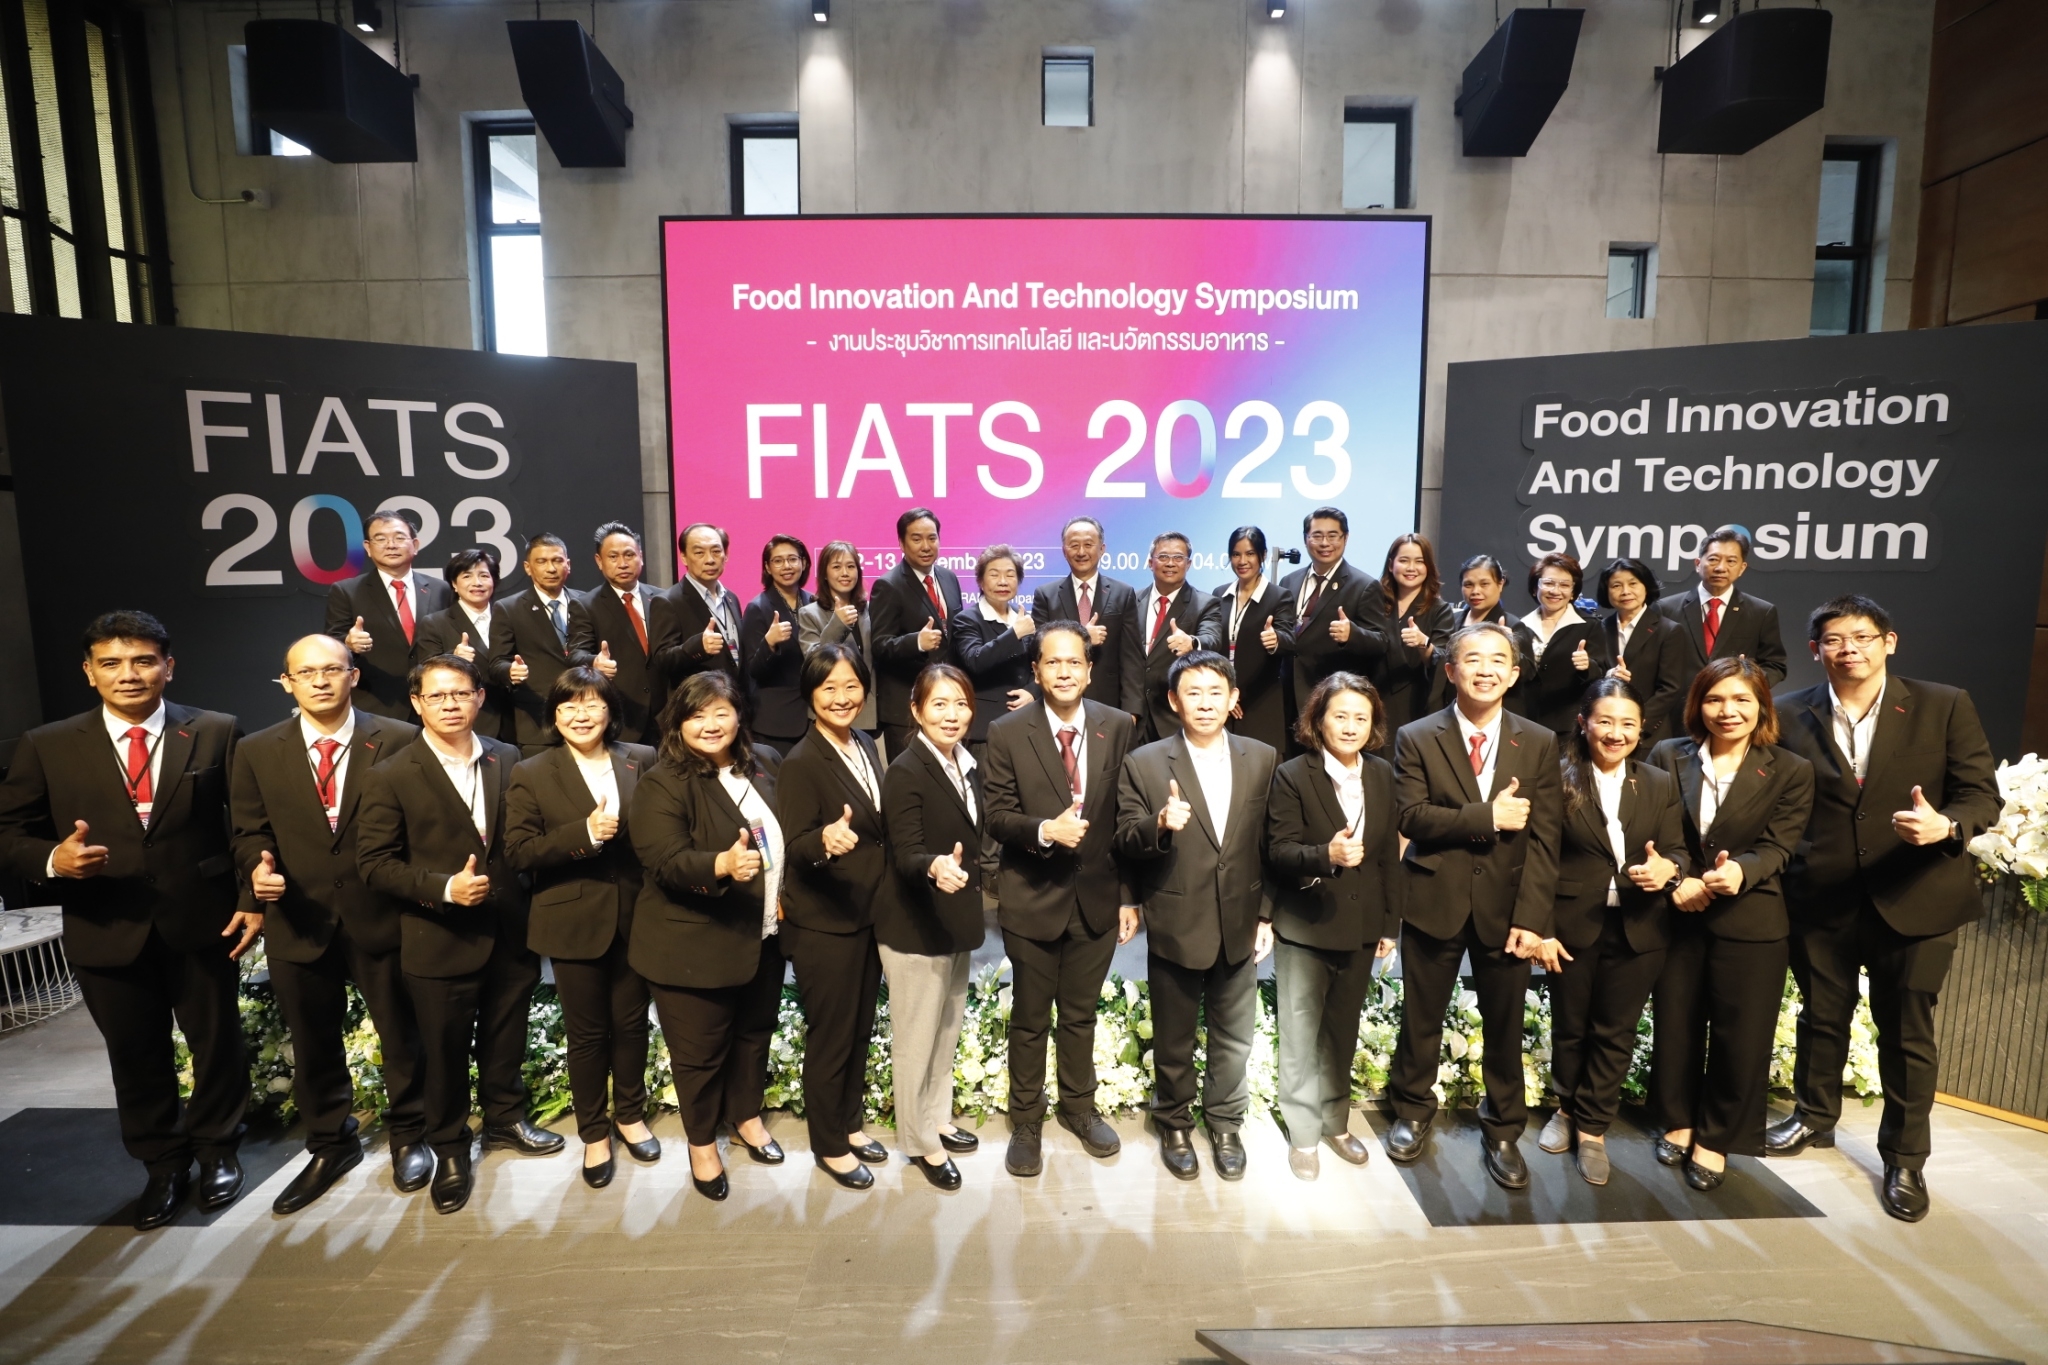 ซีพีแรม ผนึกกำลังพันธมิตรทุกภาคส่วน ดีเดย์จัดงานประชุมวิชาการ Food Innovation and Technology Symposium : FIATS 2023 ยกระดับขีดความสามารถอุตสาหกรรมอาหารของไทยสู่ความมั่นคง และยั่งยืน